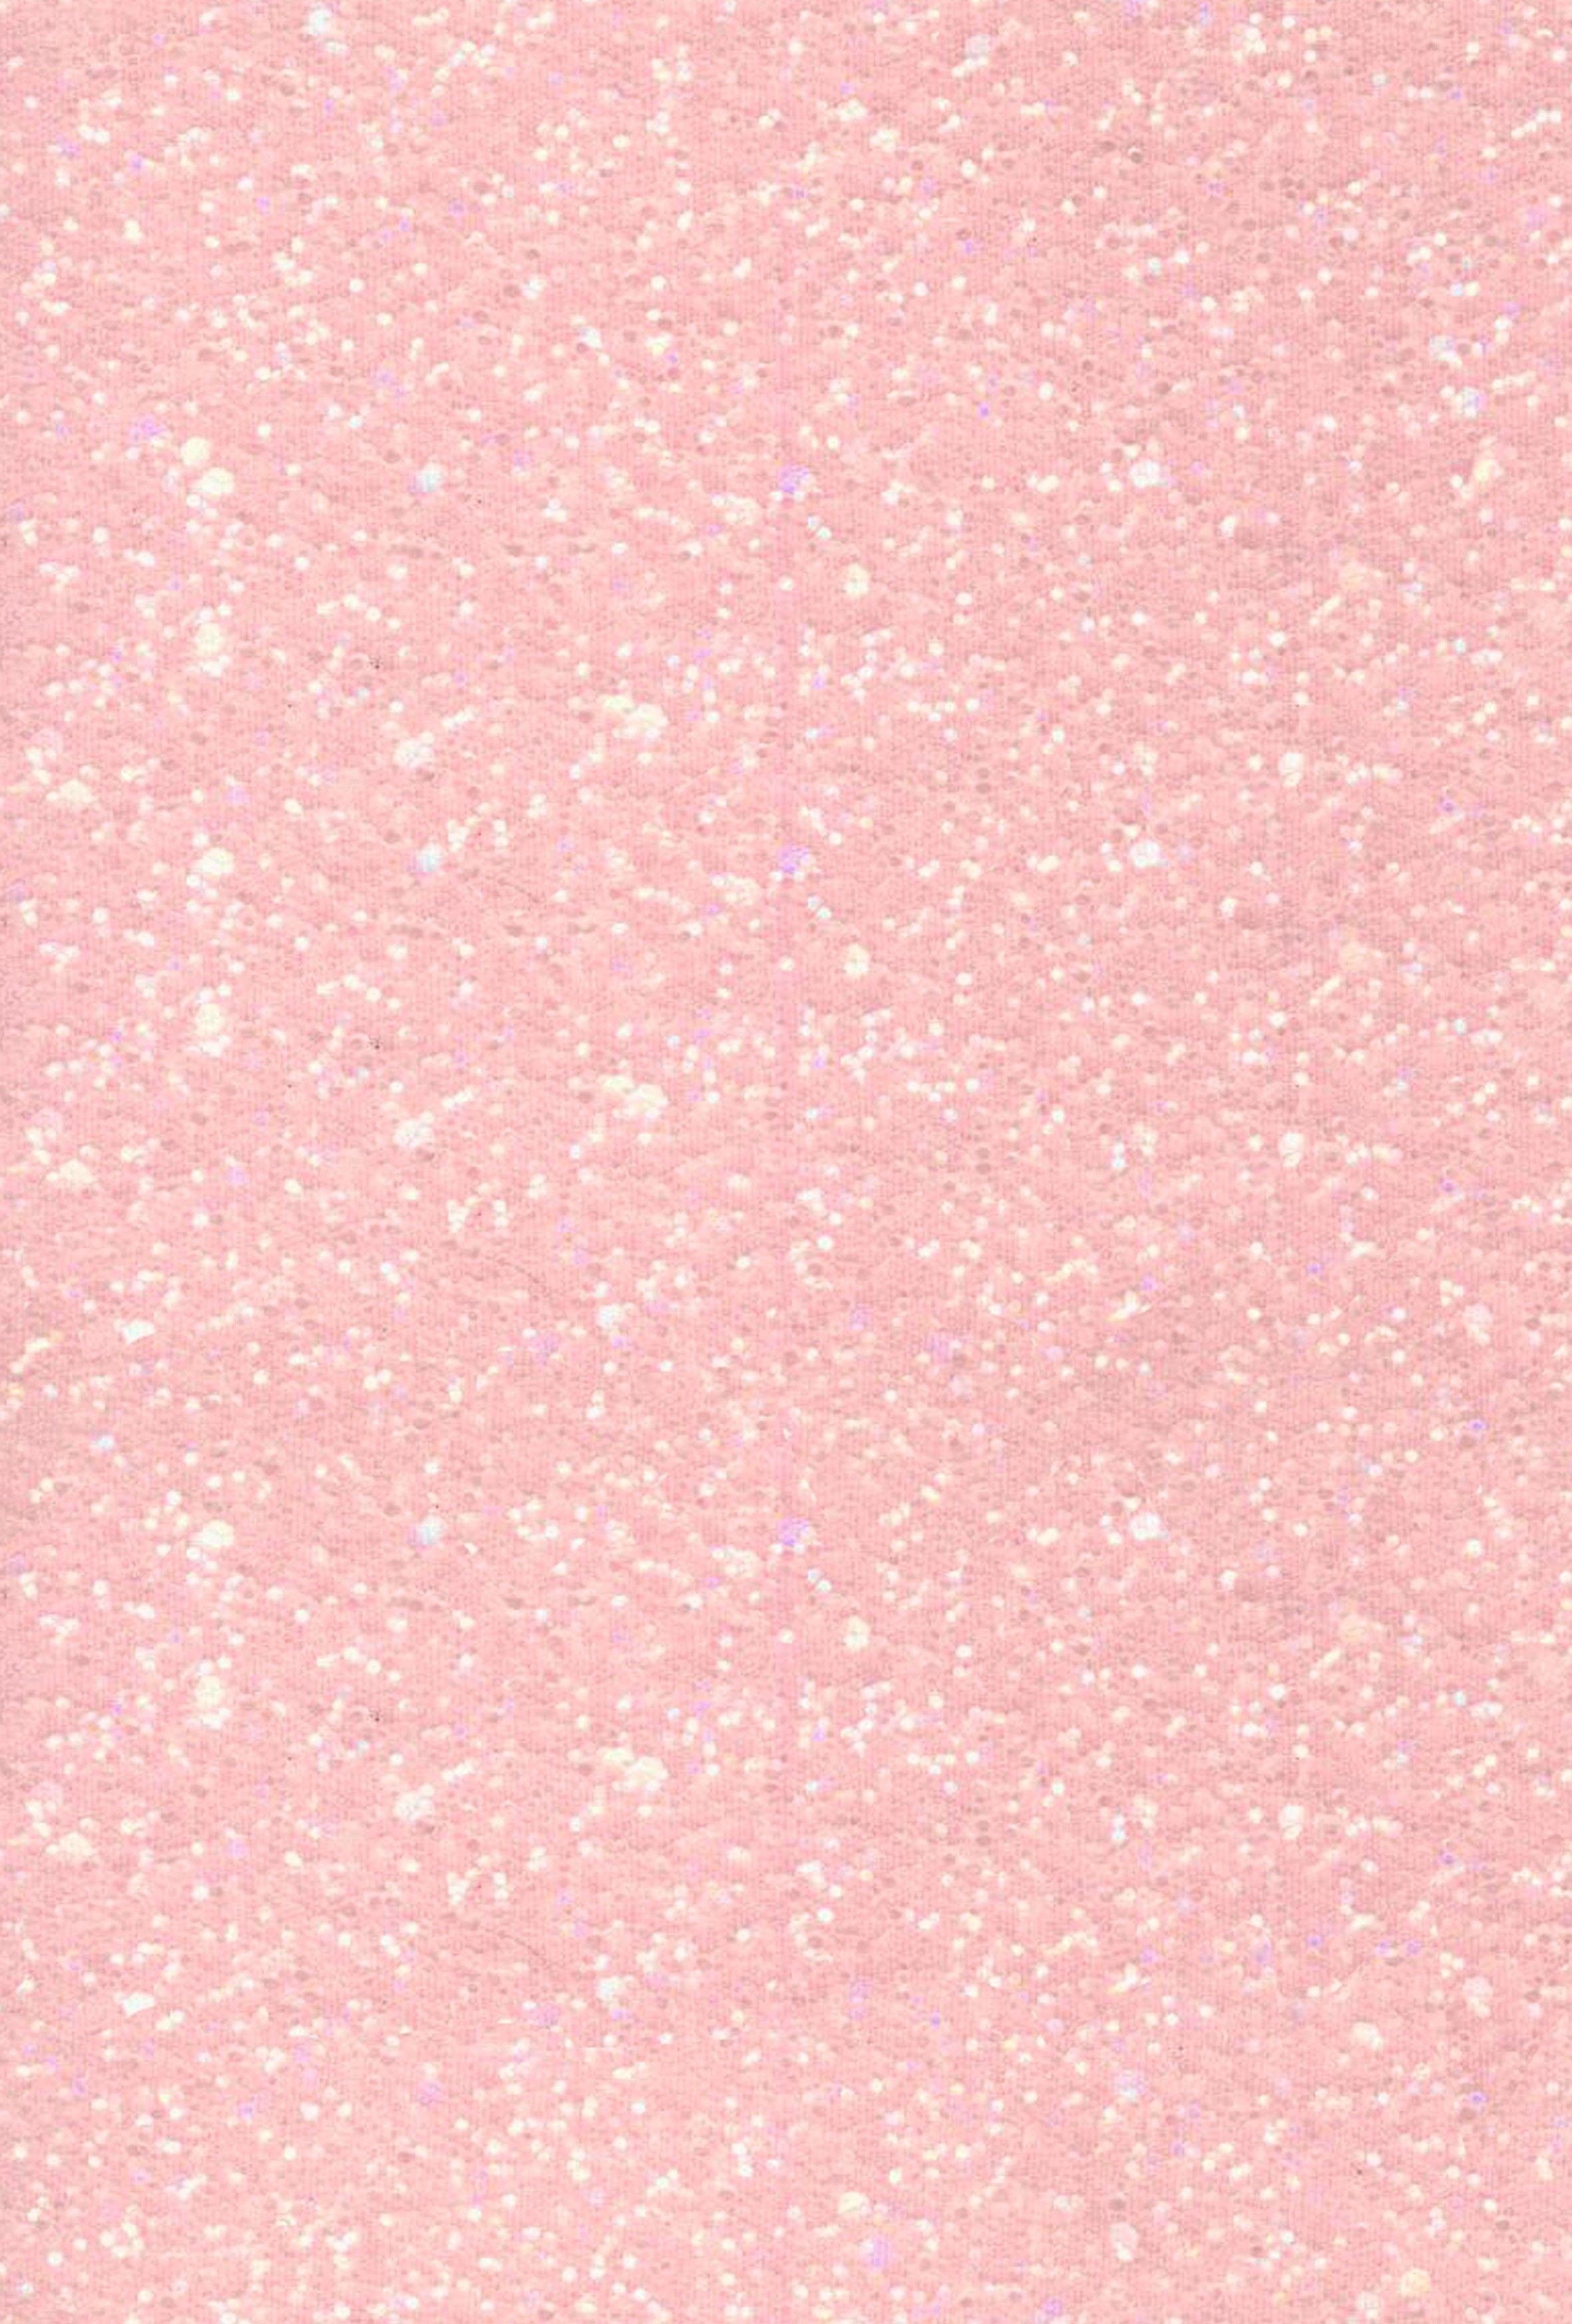 Sparkle pink background - batmanstl